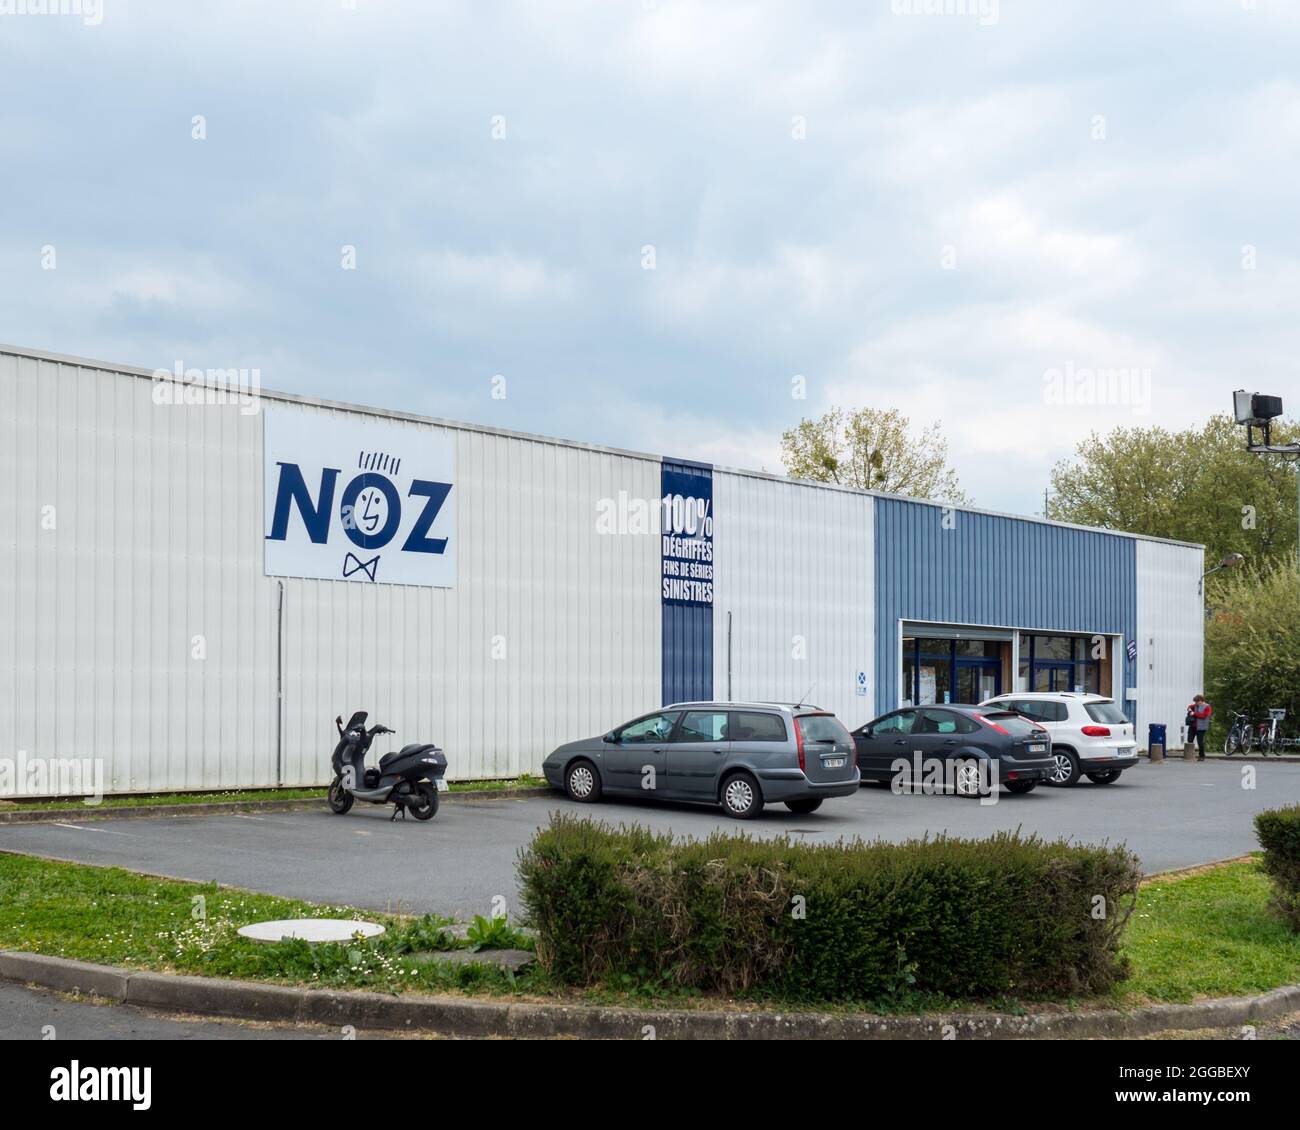 FLECHE, FRANCIA - 22 luglio 2021: IL NOZ in Francia: Vista frontale del negozio boutique francese con logo e segnaletica Foto Stock